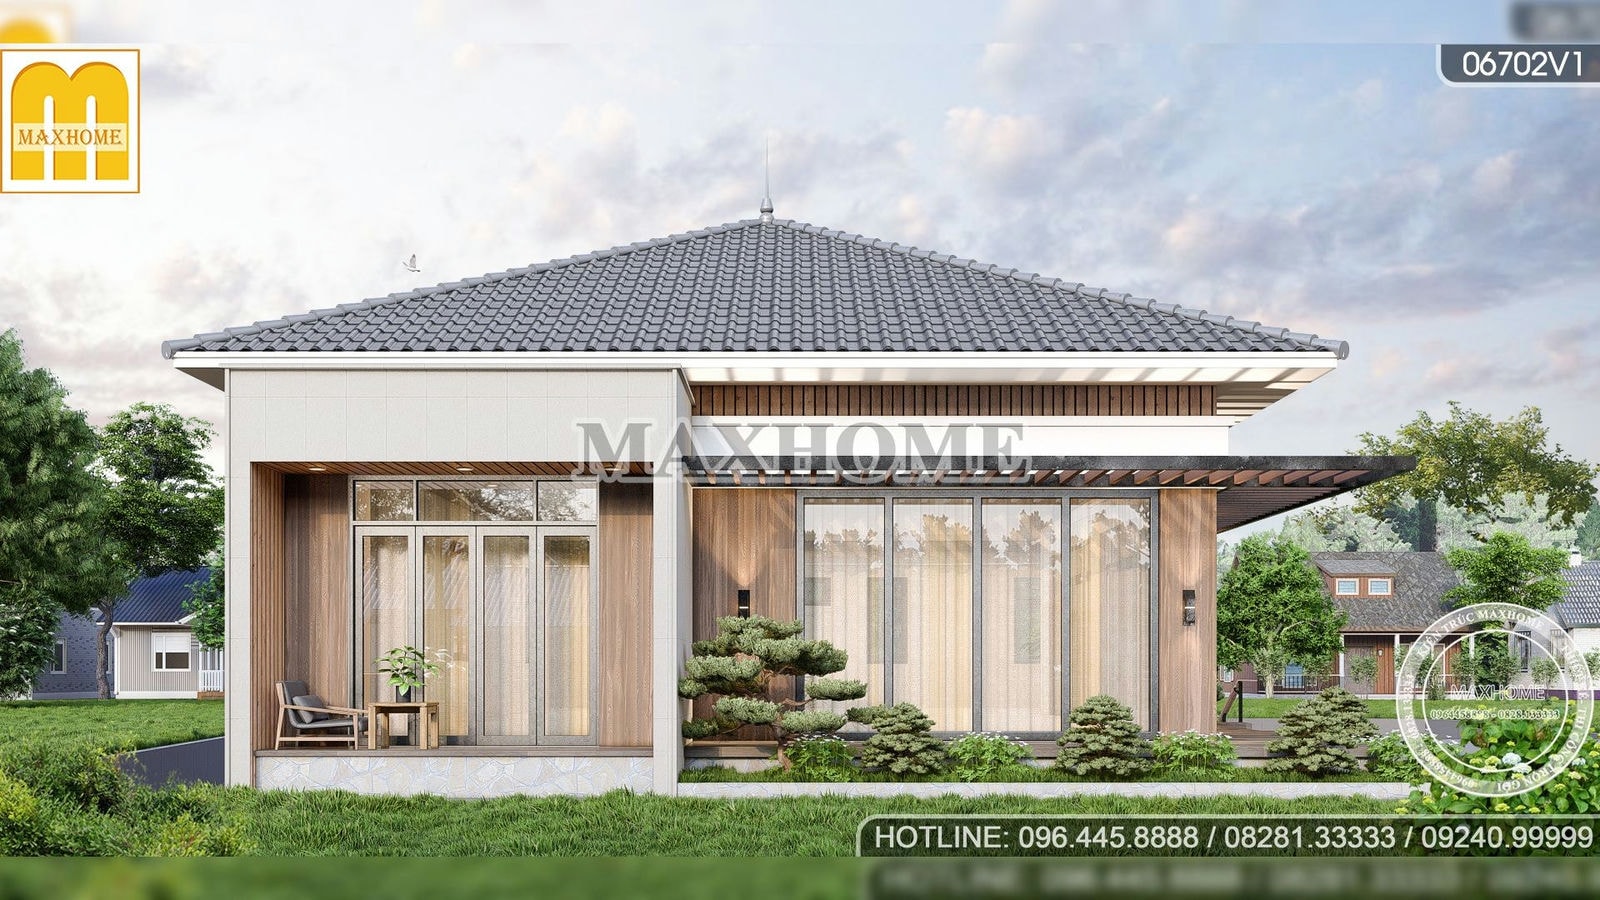 Maxhome thiết kế căn nhà vườn đẹp như bộ phim Hollywood | MH01867